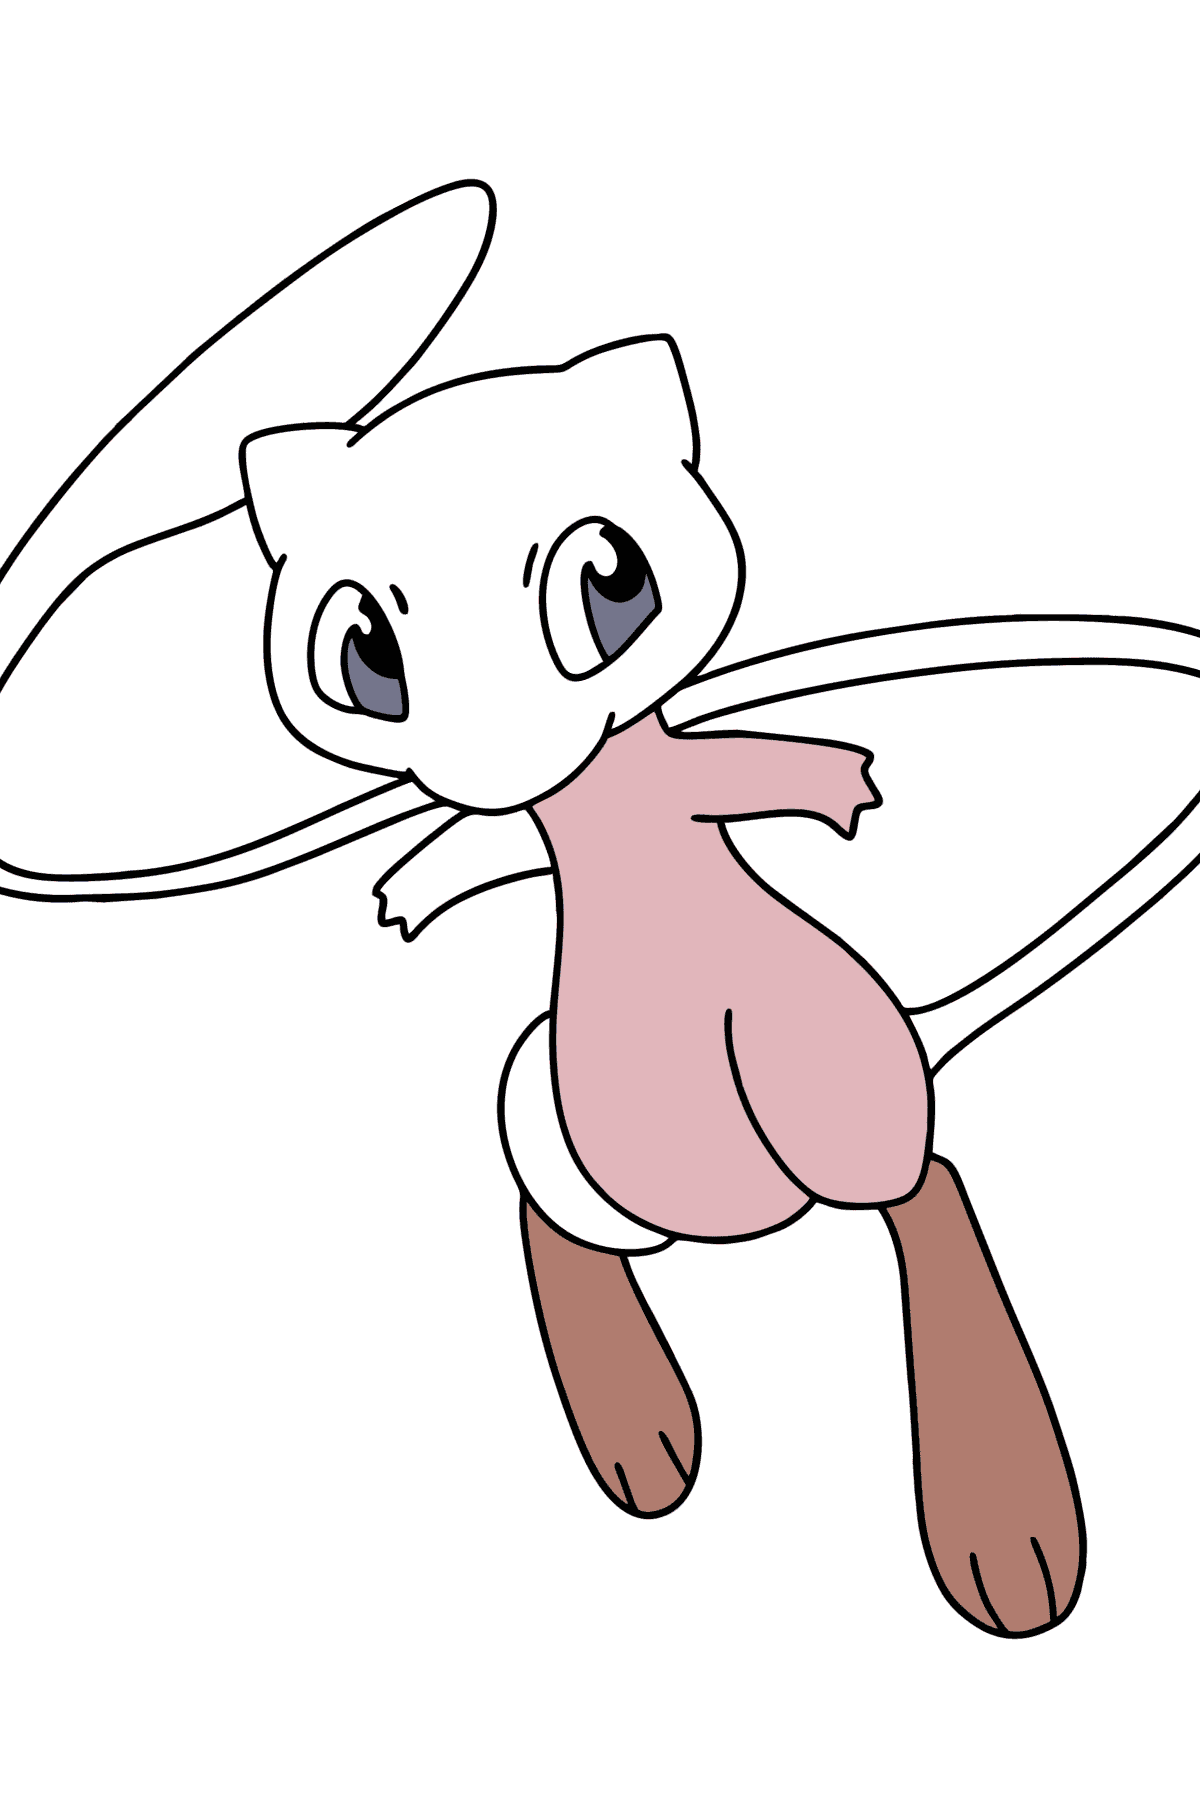 Tegning til fargelegging Pokémon Go Mew - Tegninger til fargelegging for barn